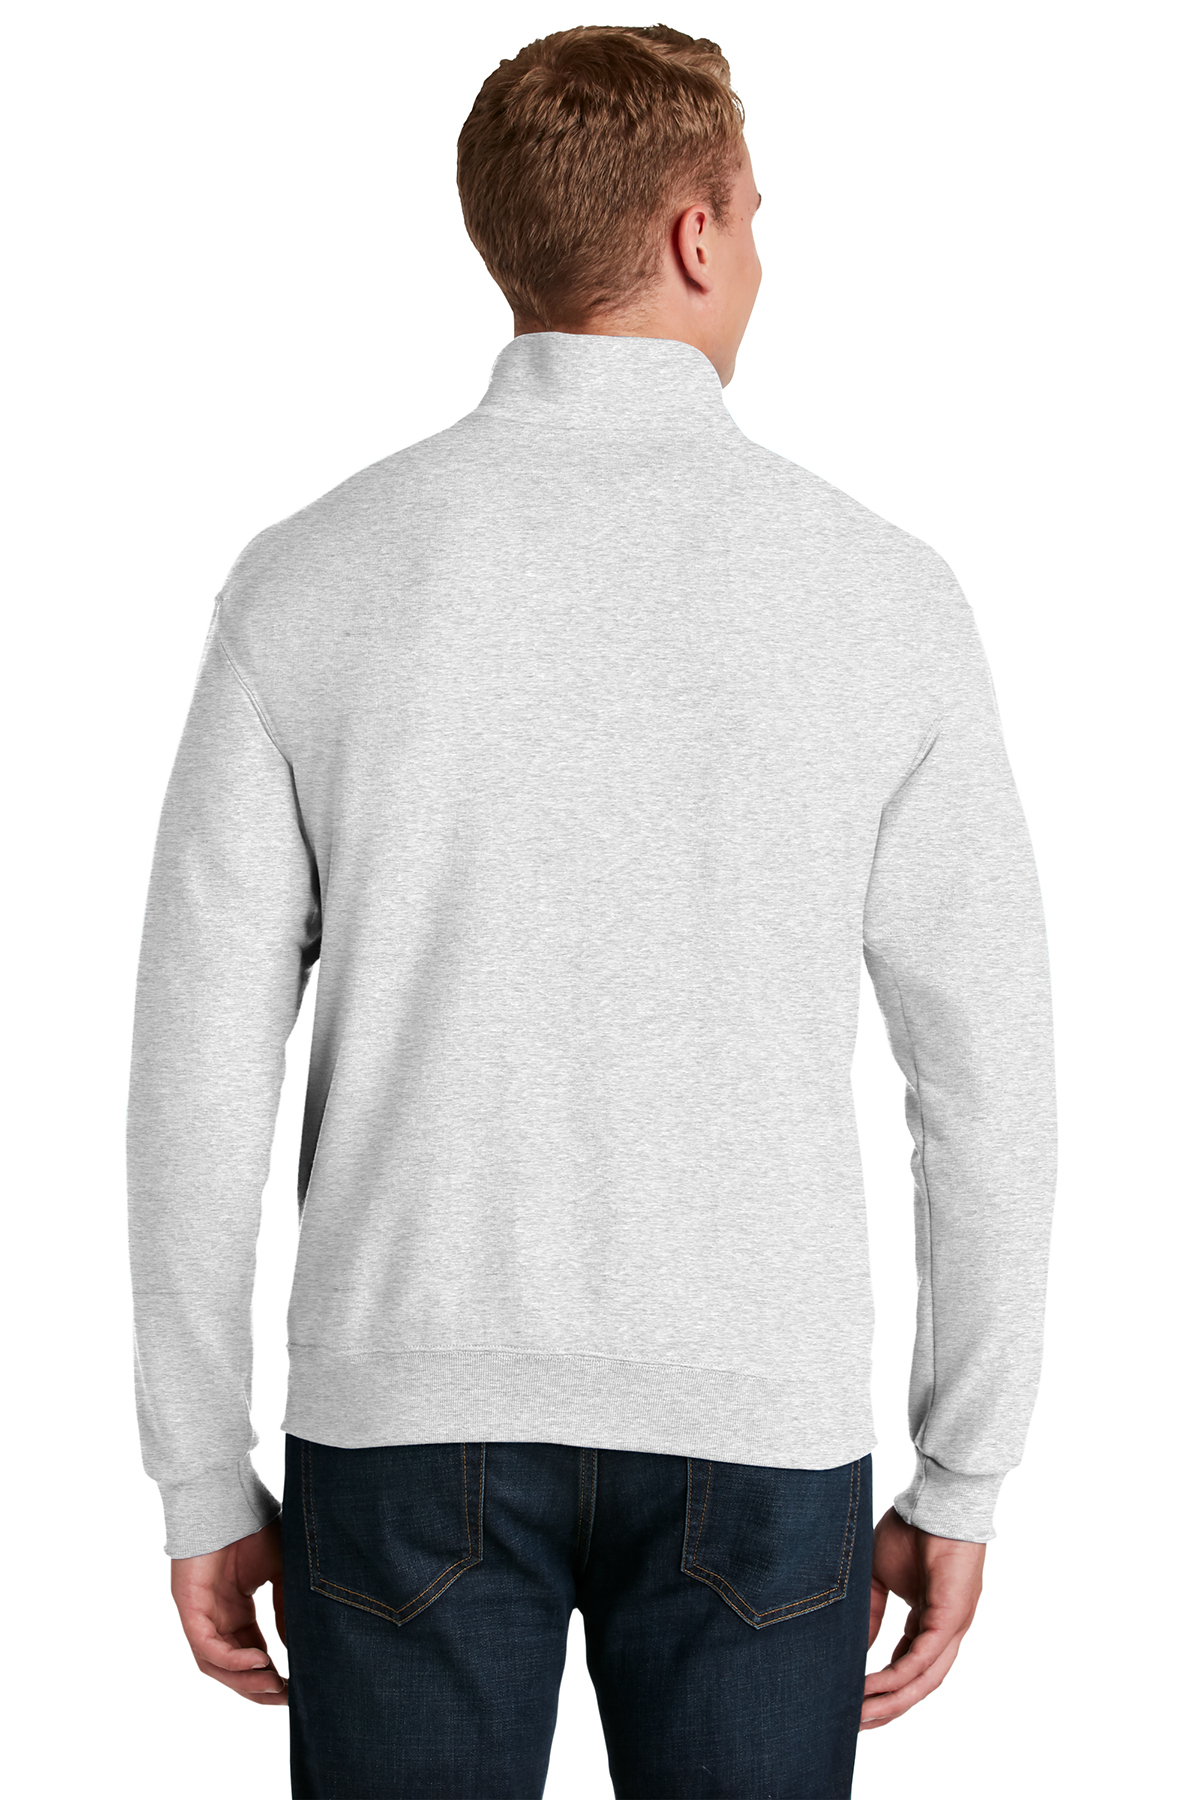 JERZEES - NuBlend 1/4-Zip Cadet Collar Sweatshirt | Product | SanMar